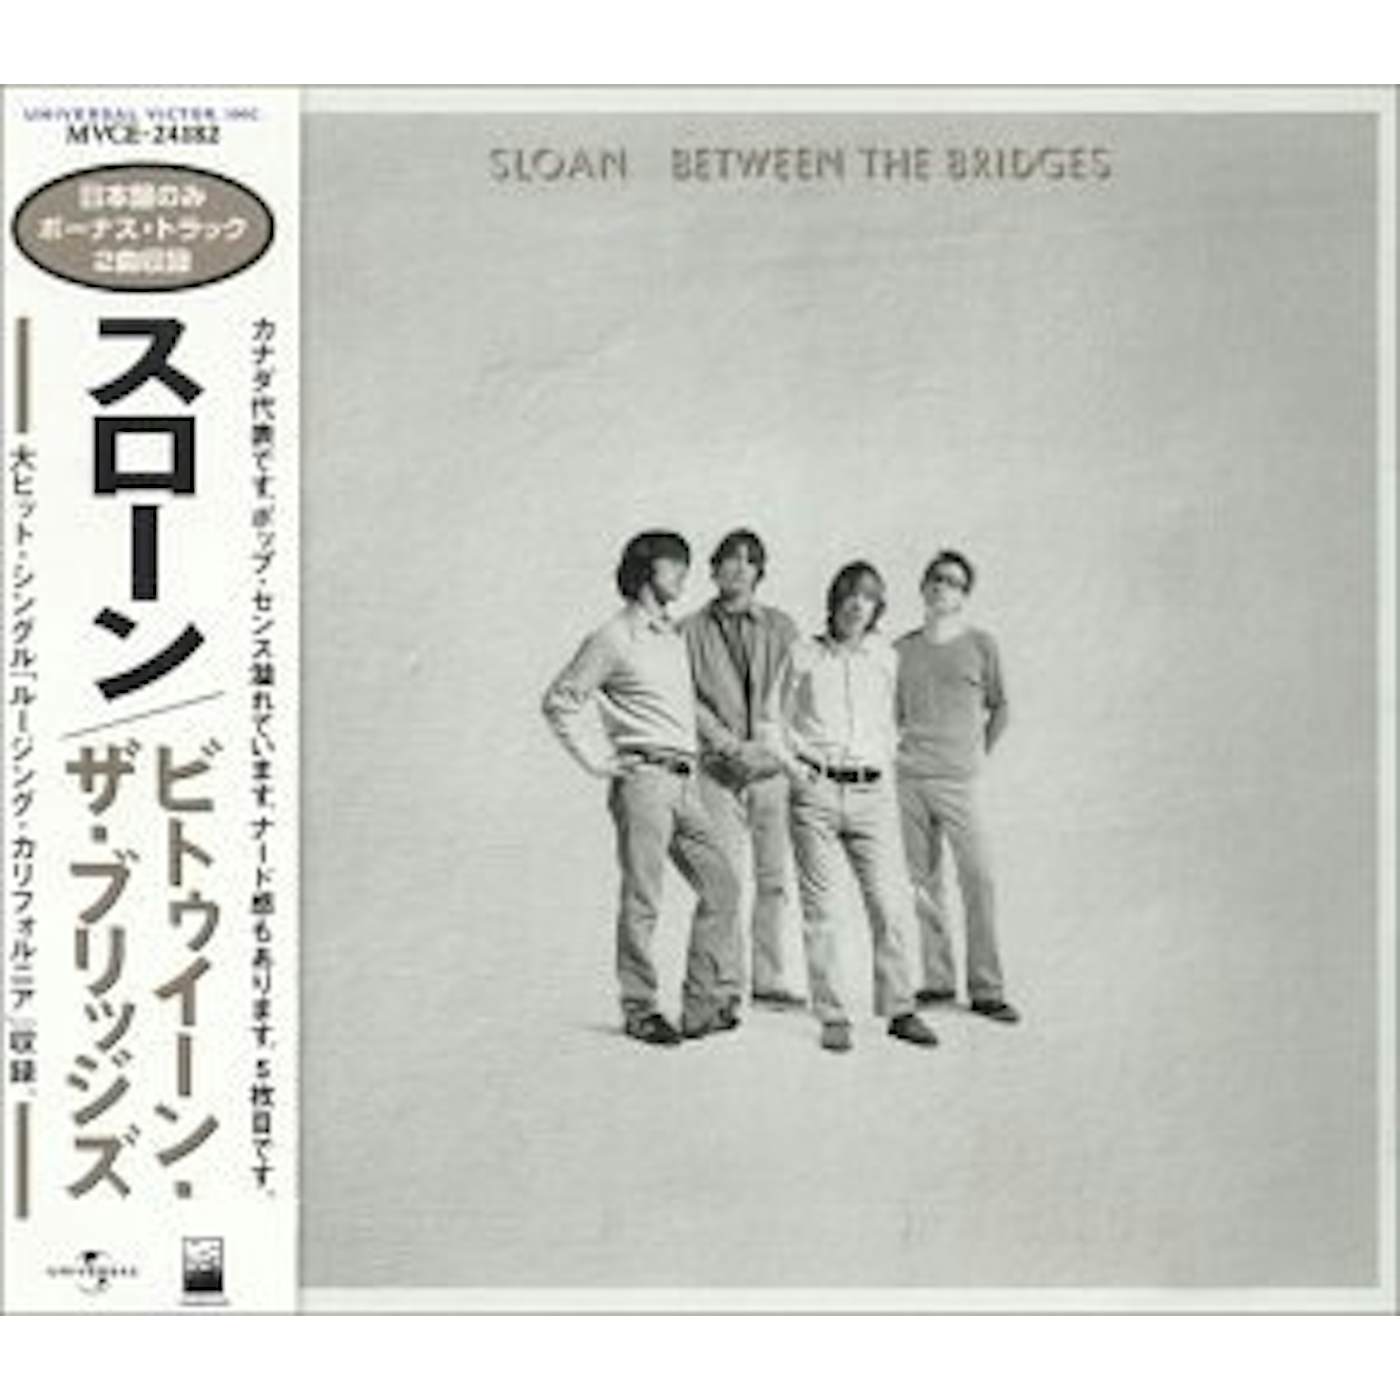 Sloan BETWEEN BRIDGES CD